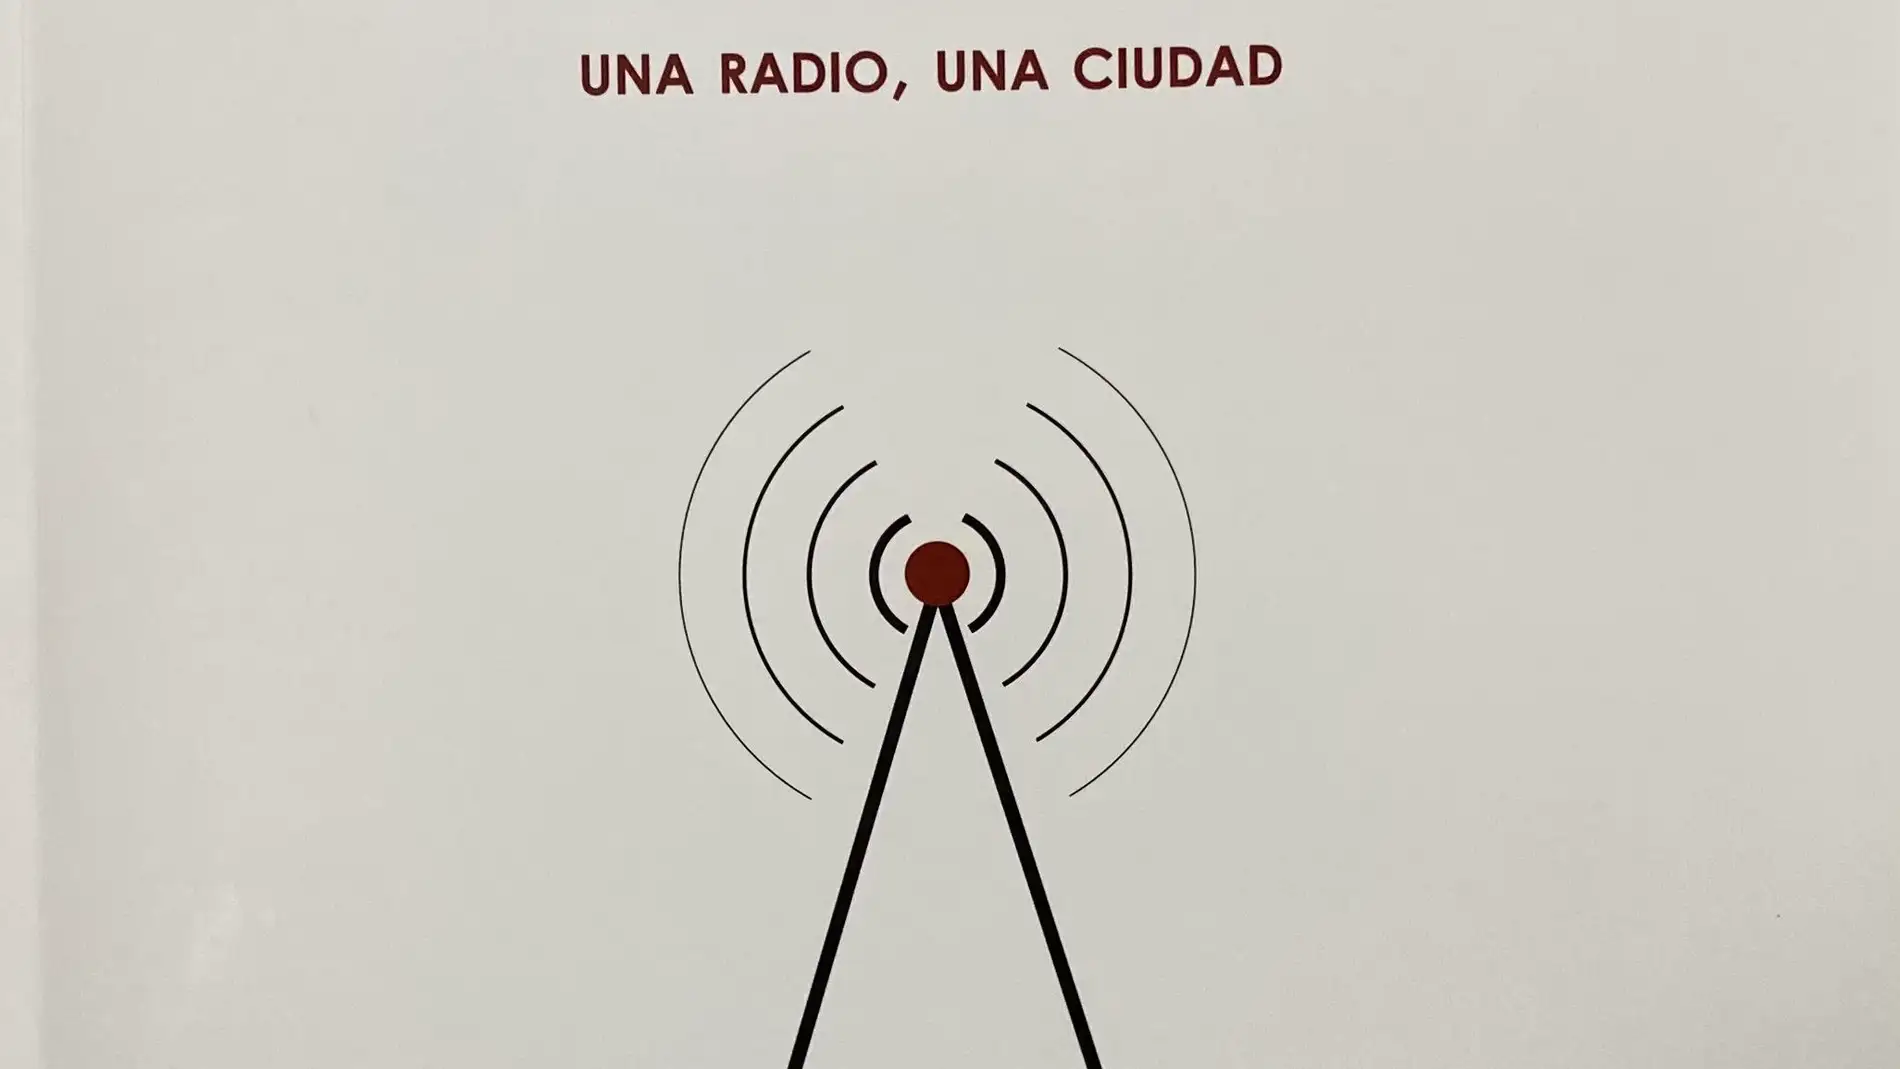 La historia de RNE en Cuenca, en un libro de José Ángel García 